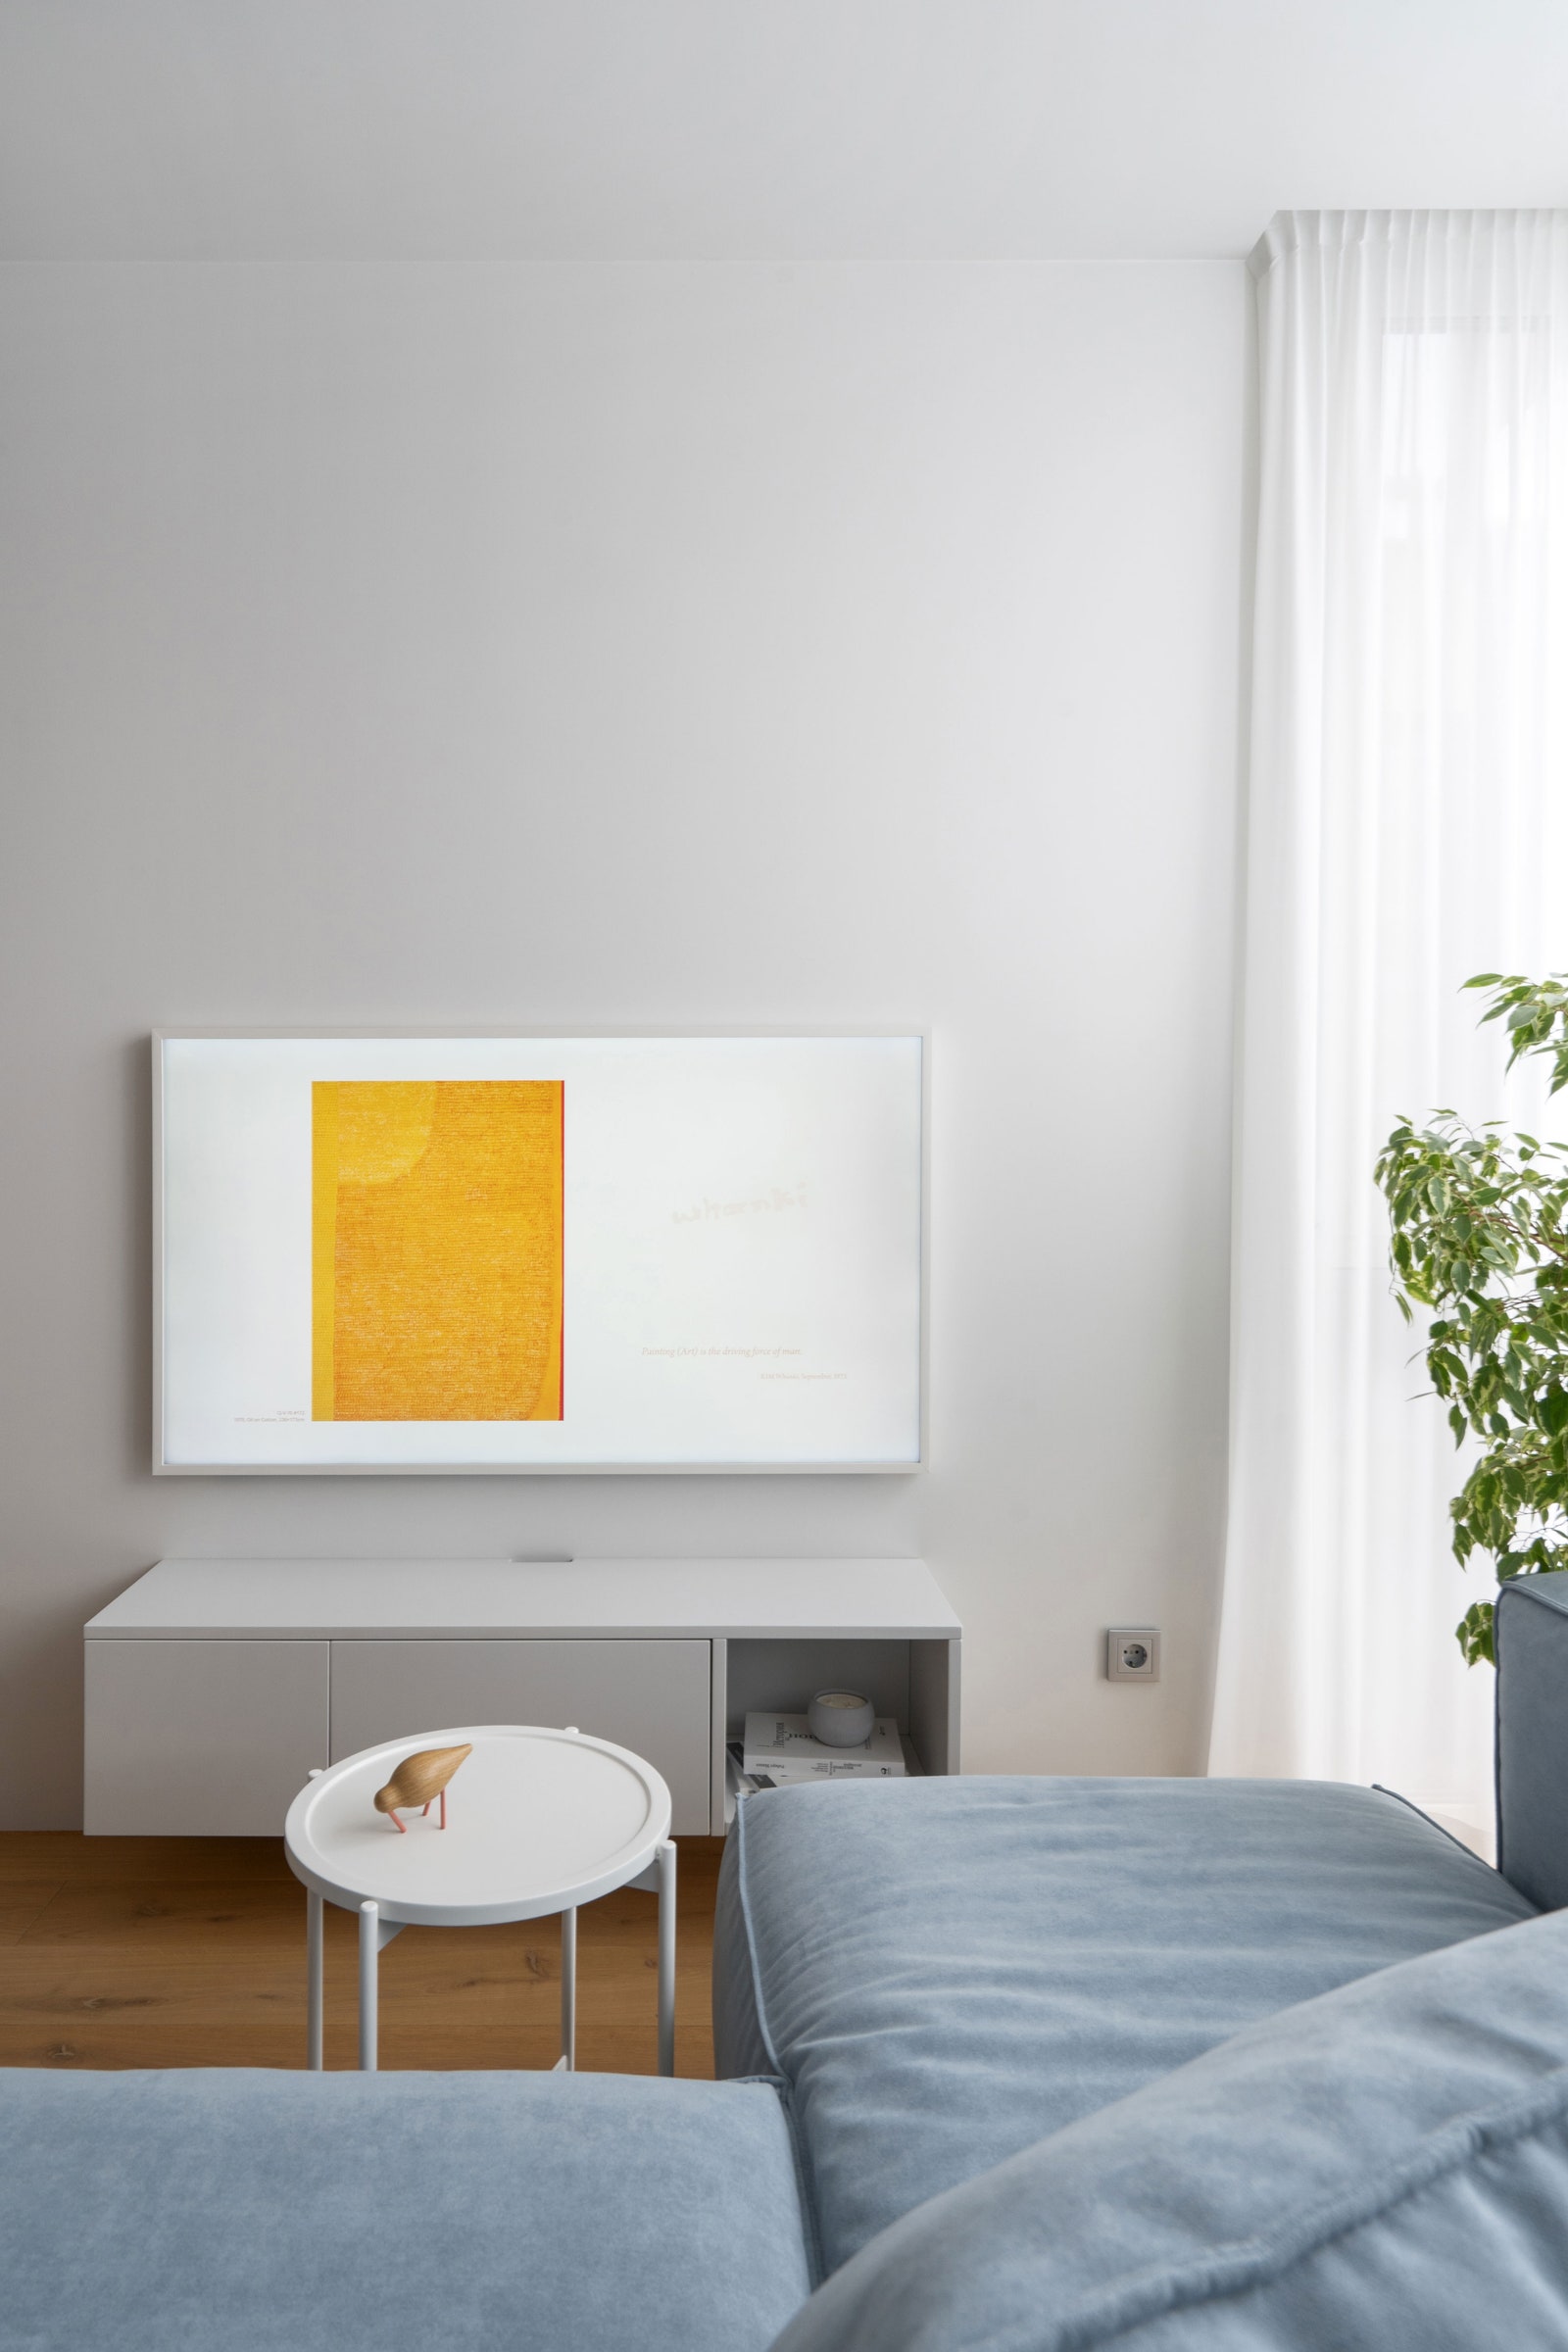 Фрагмент гостиной. nbspТВтумба сделана по чертежам дизайнера в киевской мебельной студии “Соловей” телевизор Samsung Frame.